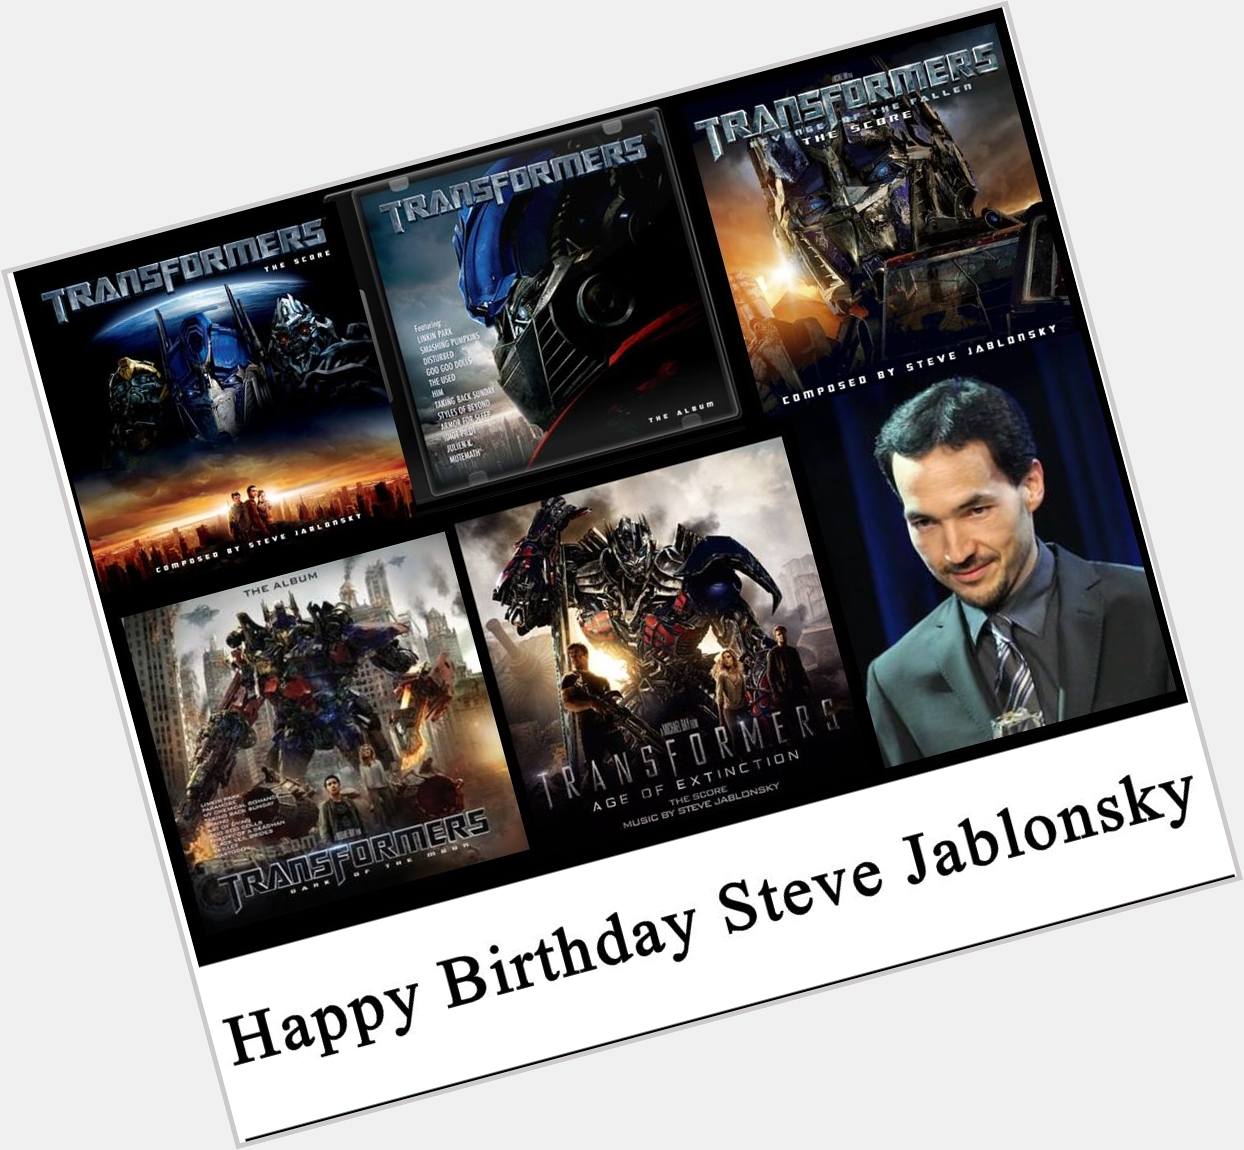 HaPpY   Birthday Steve Jablonsky 